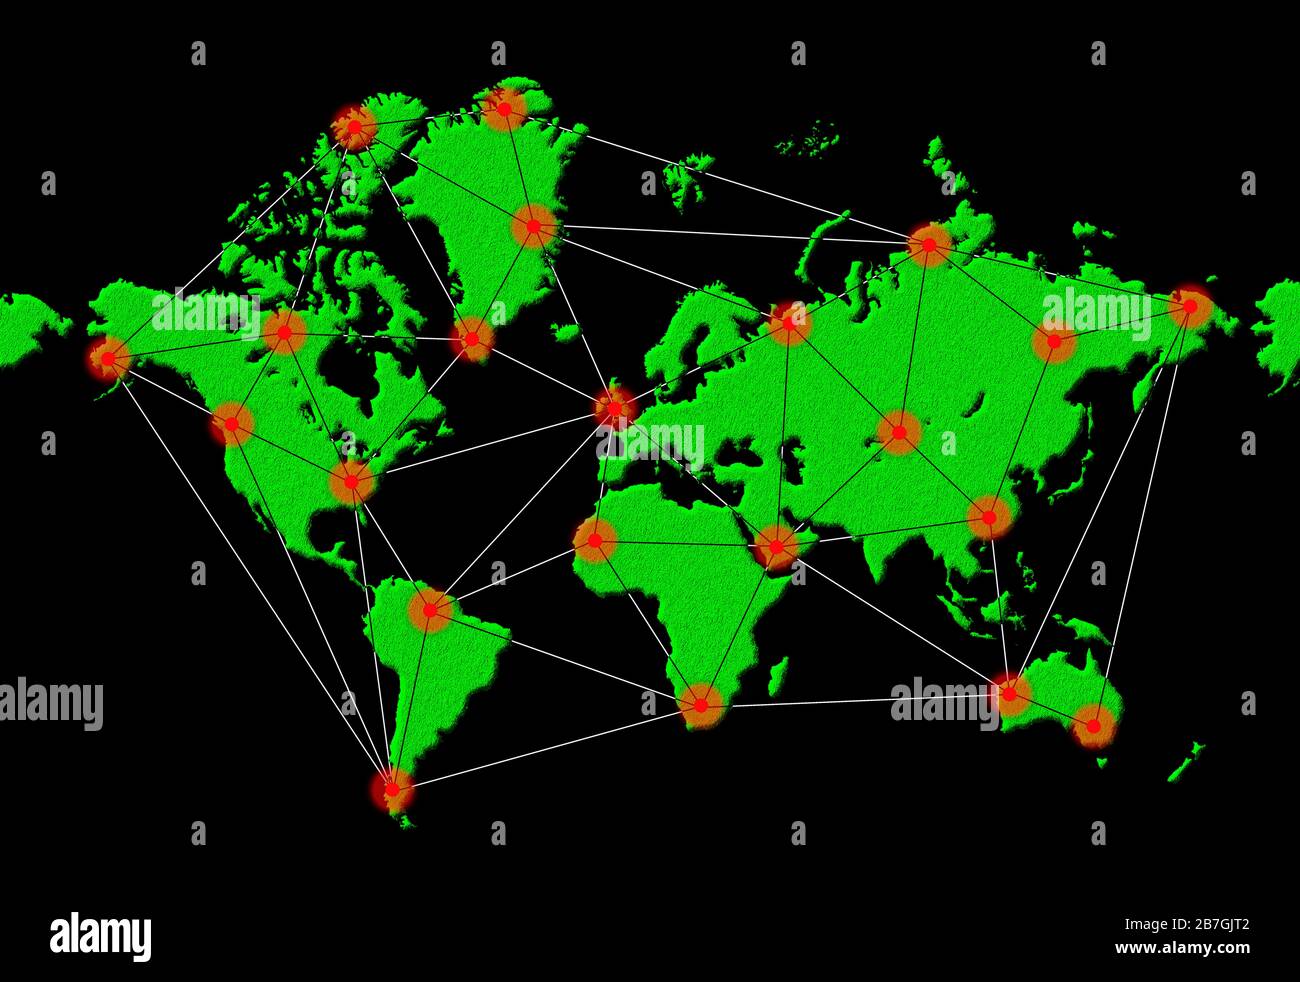 Abbildung zeigt die weltweite Verbreitung einer Infektion oder Infektionskrankheit oder eines Virus in der ganzen Welt, während einer Epidemie oder Pandemie. Stockfoto